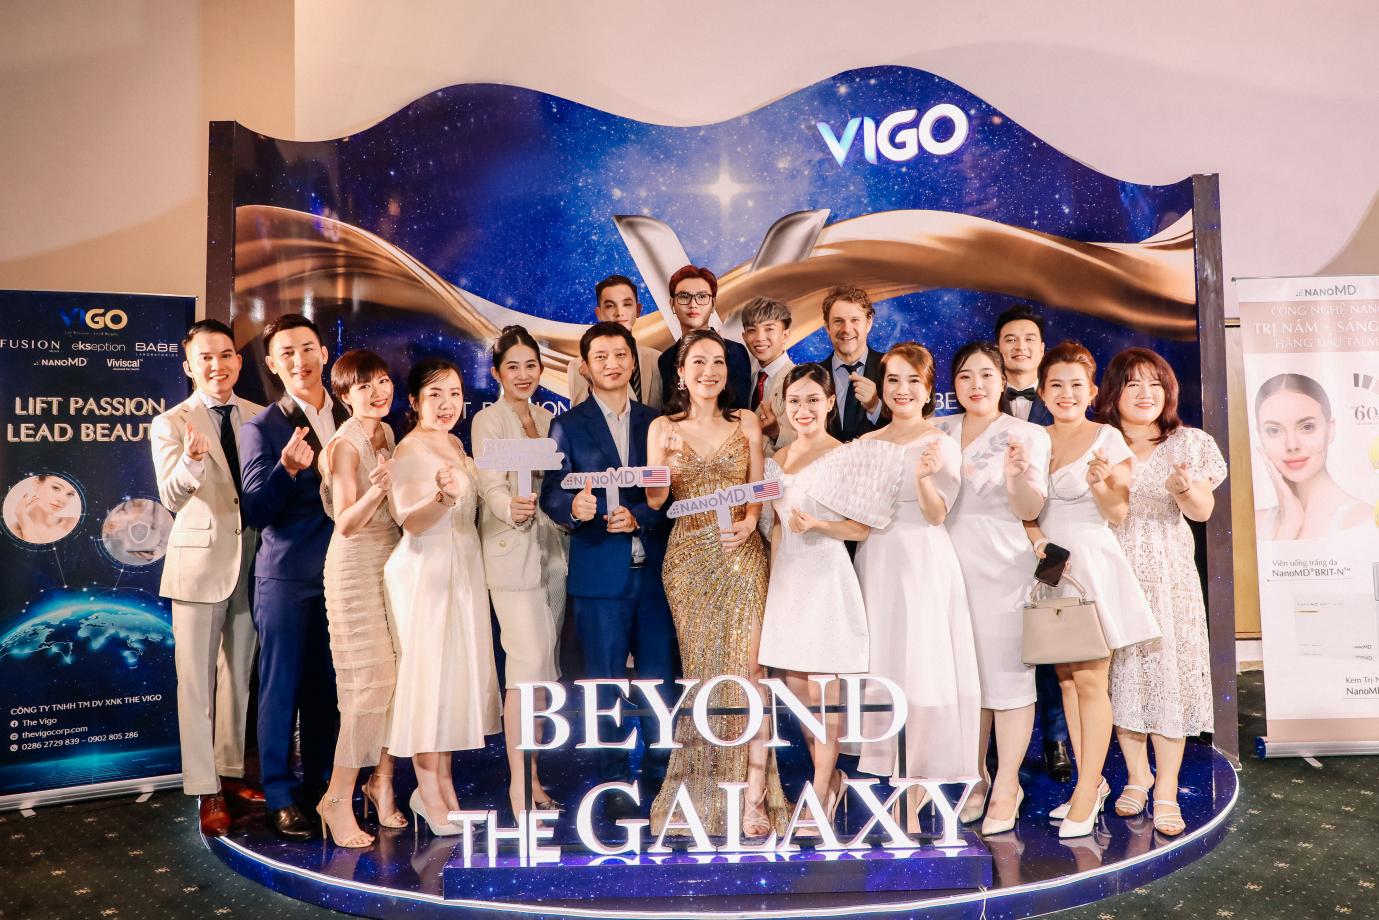 The Vigo ra mắt với mục tiêu nâng tầm ngành làm đẹp - ảnh 1